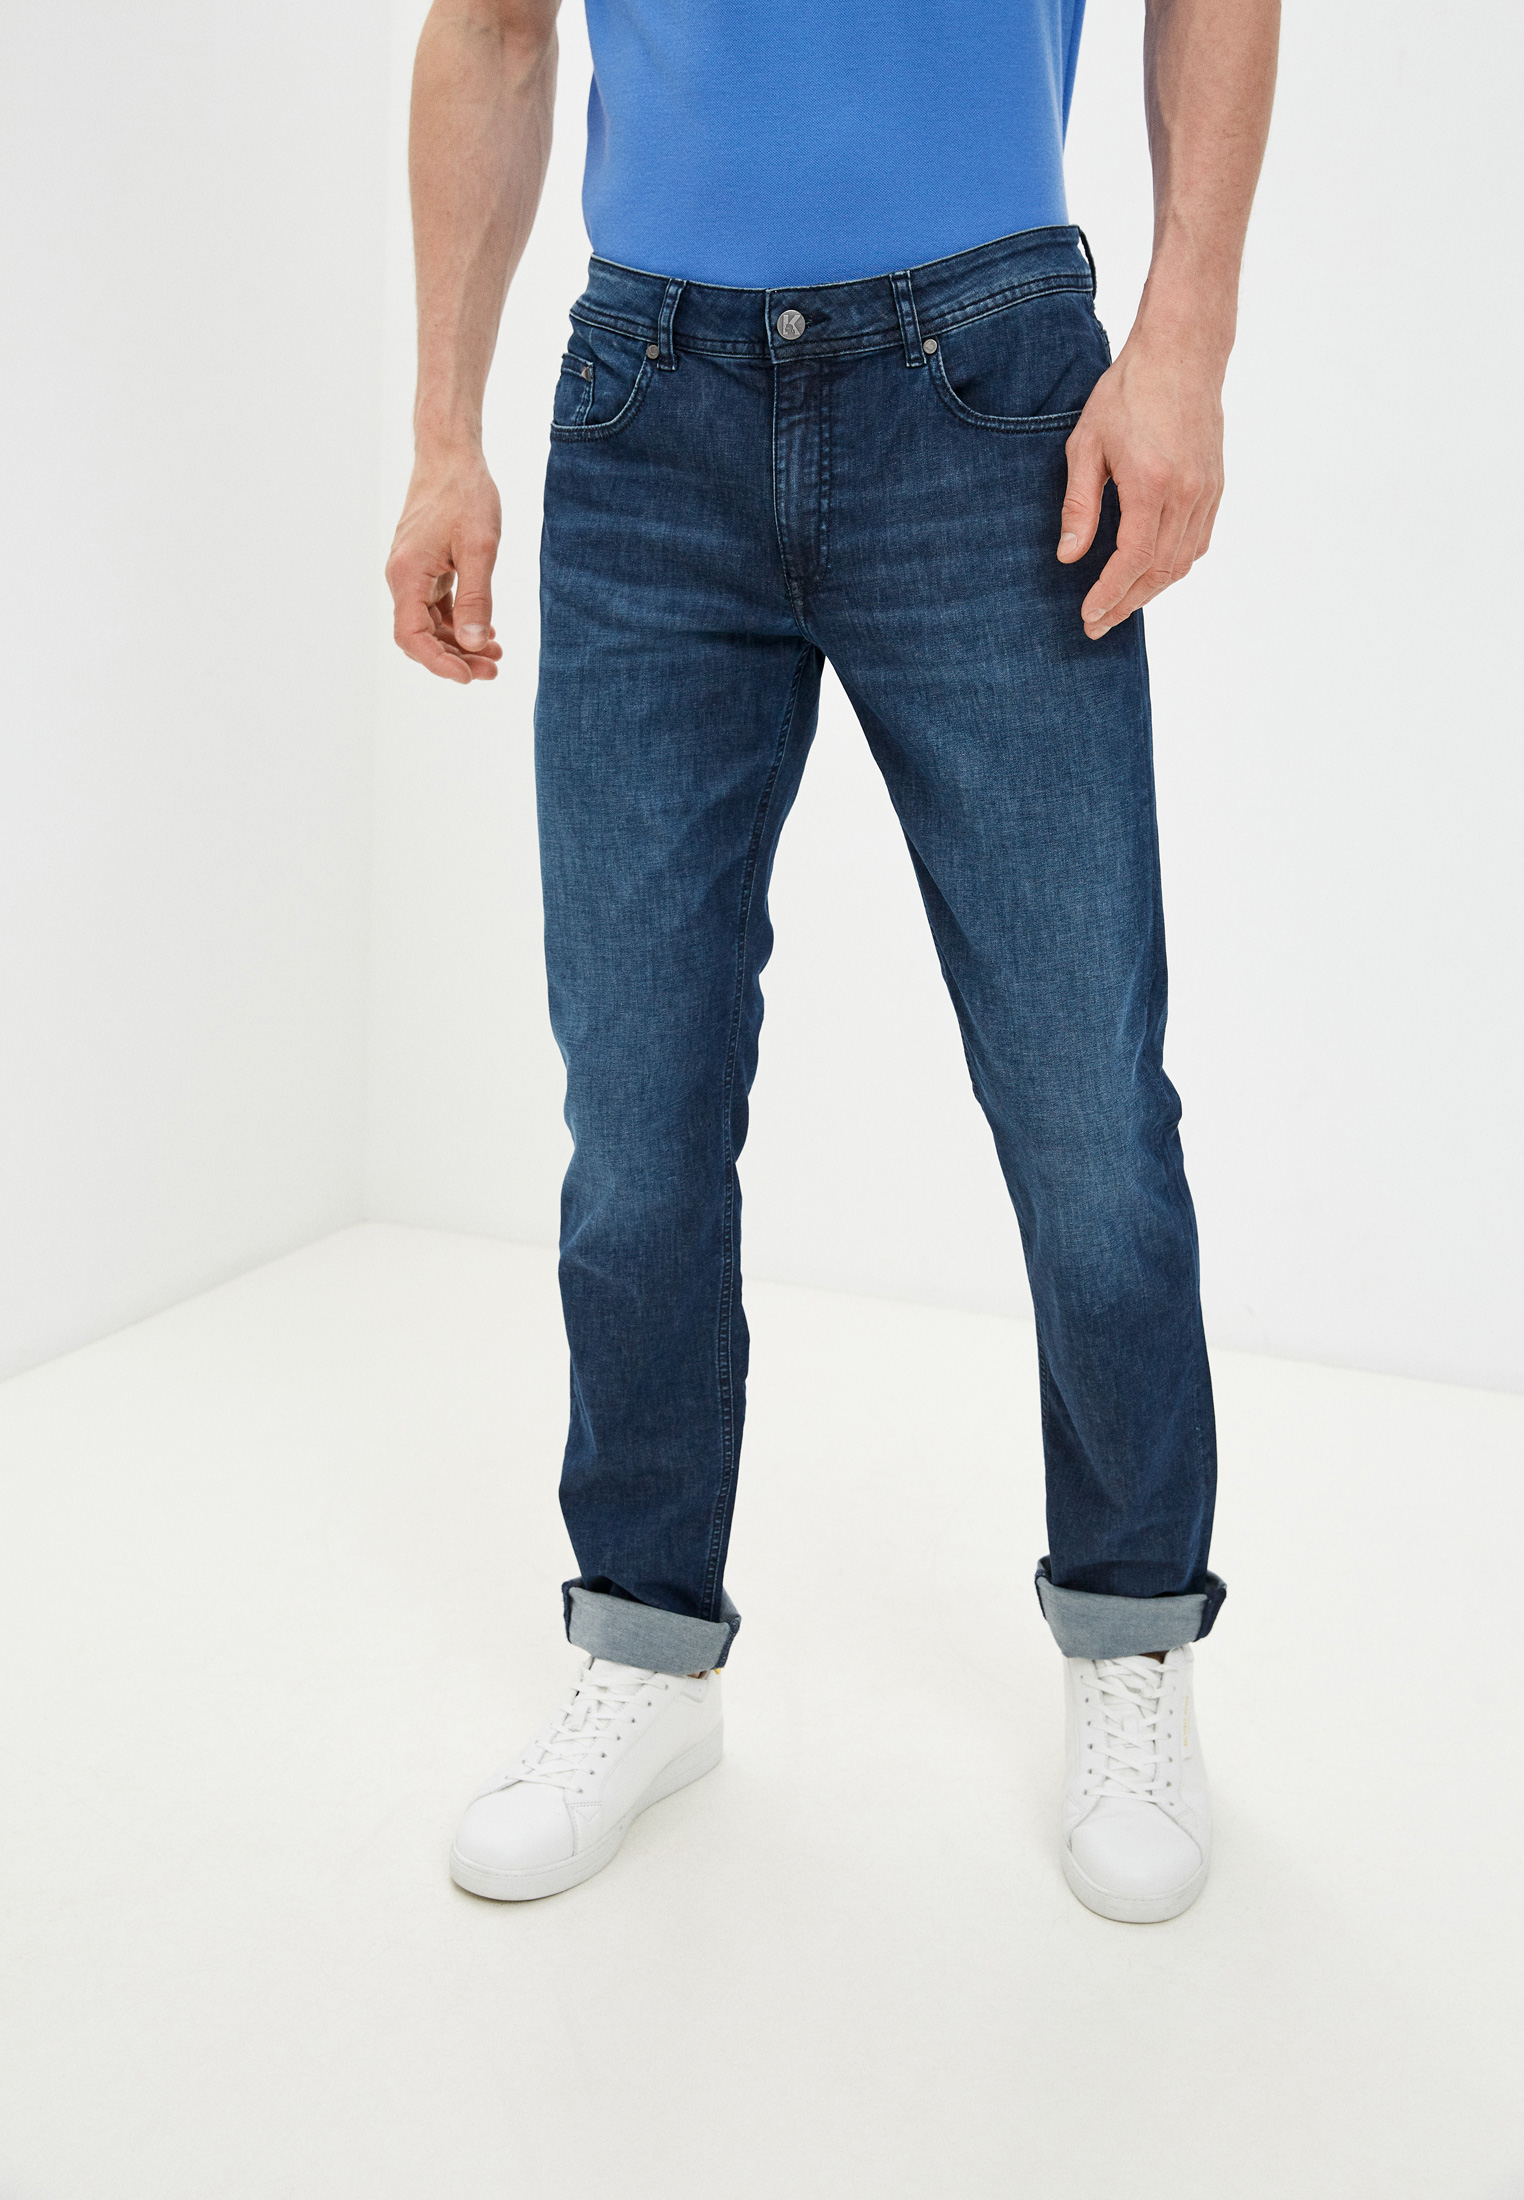 Мужские прямые джинсы Karl Lagerfeld (Карл Лагерфельд) 265840 511833: изображение 1